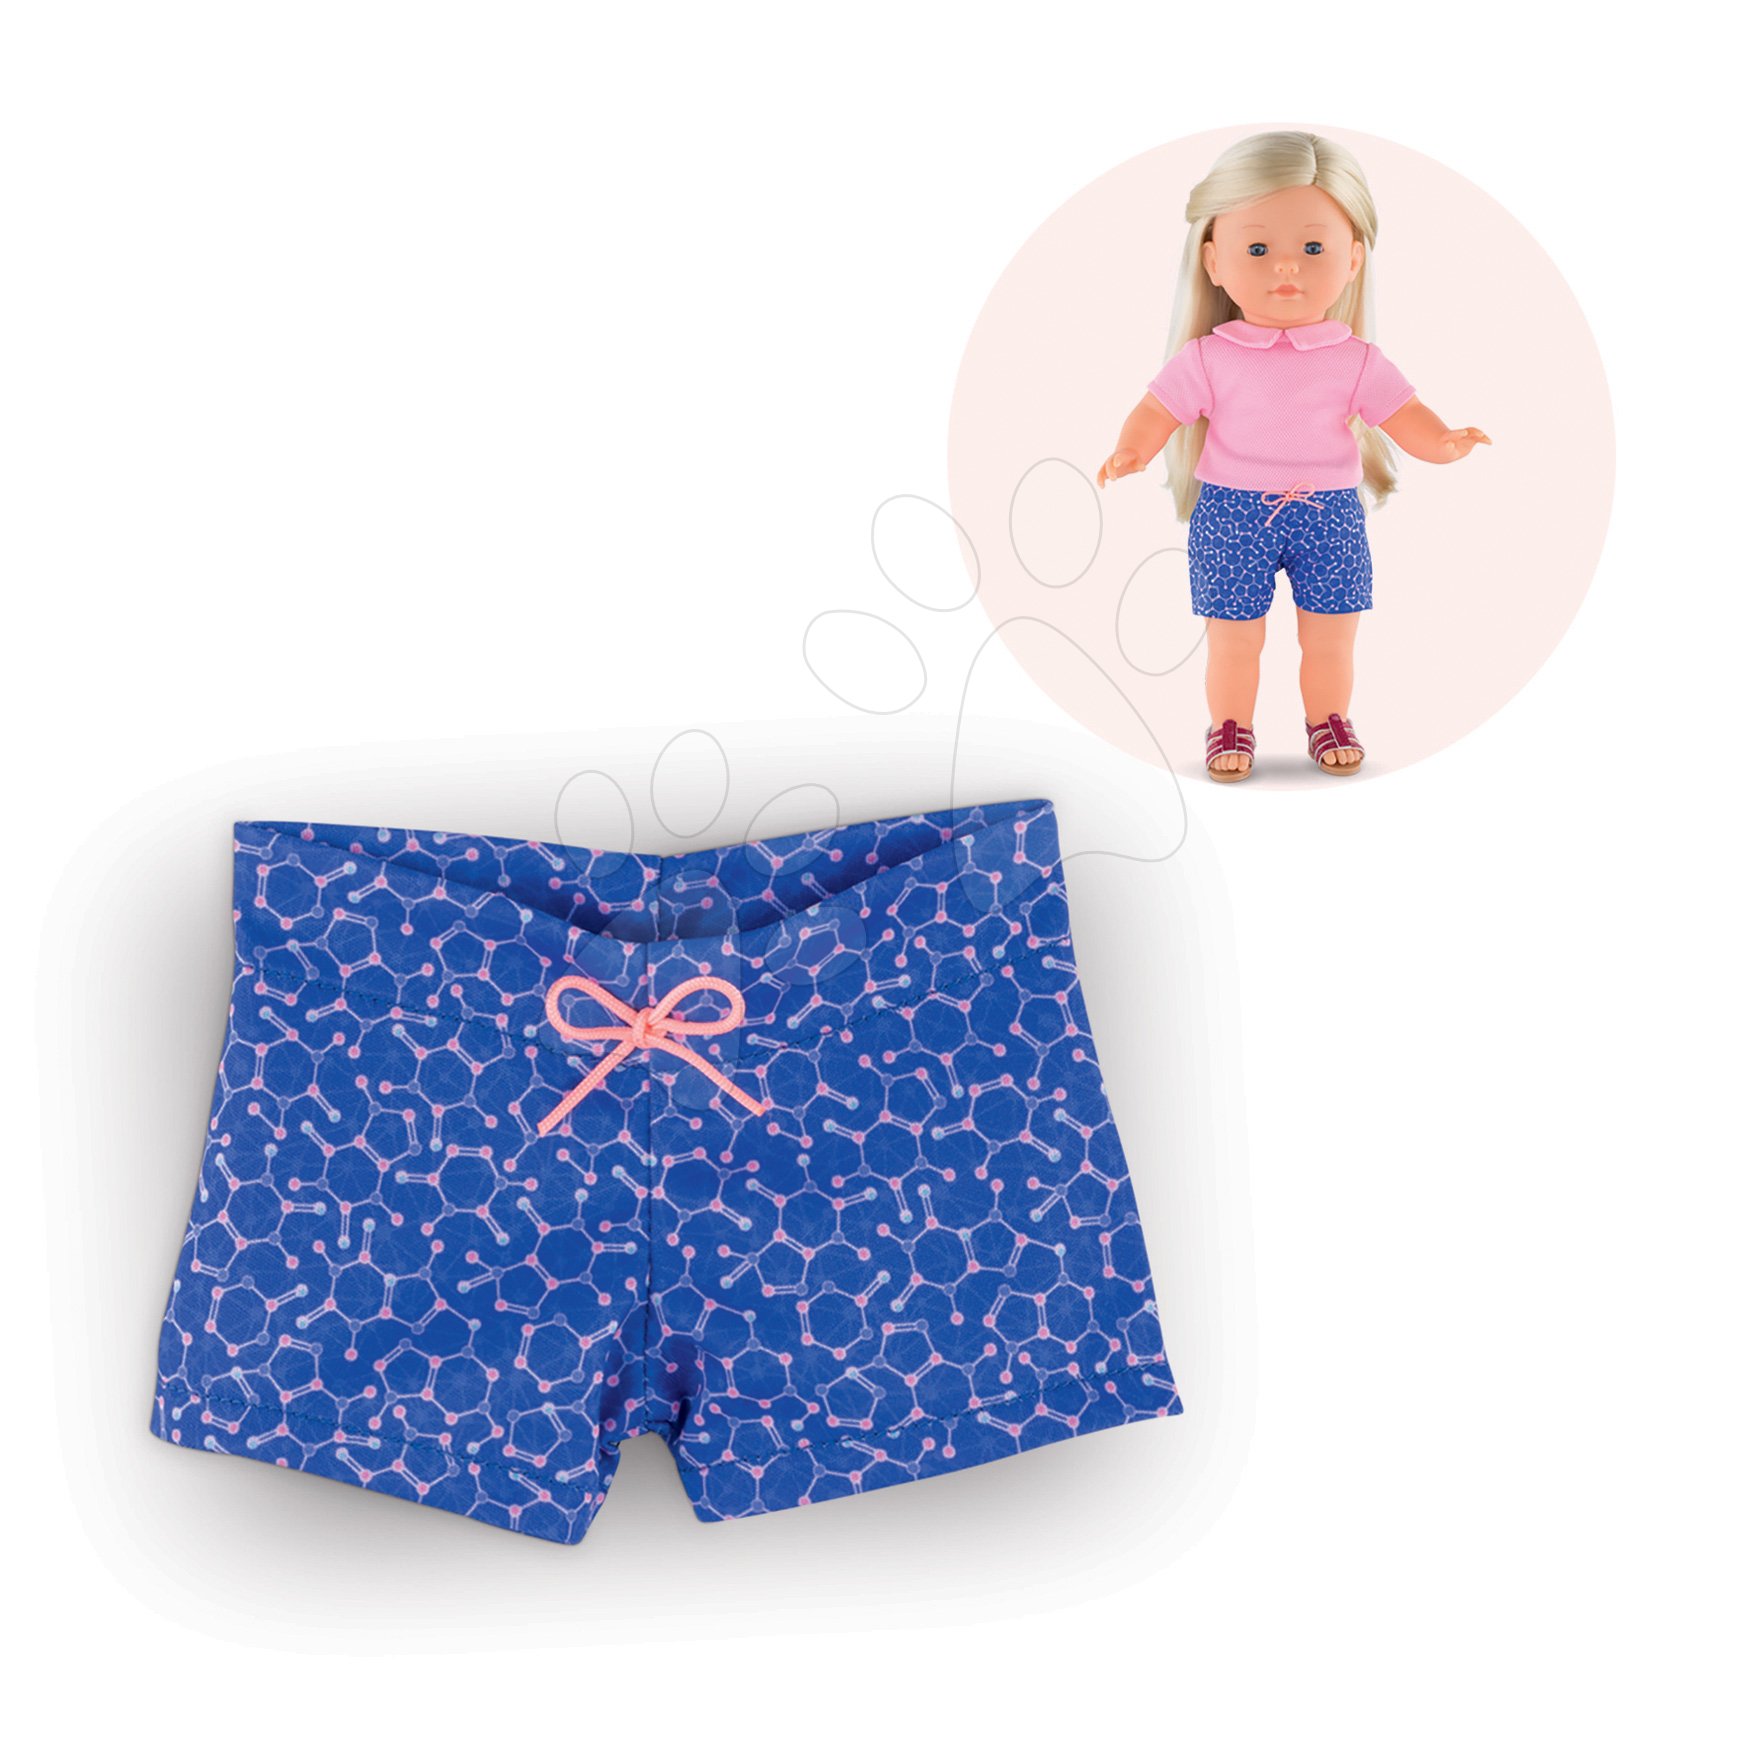 Oblečenie Shorts Ma Corolle pre 36 cm bábiku od 4 rokov